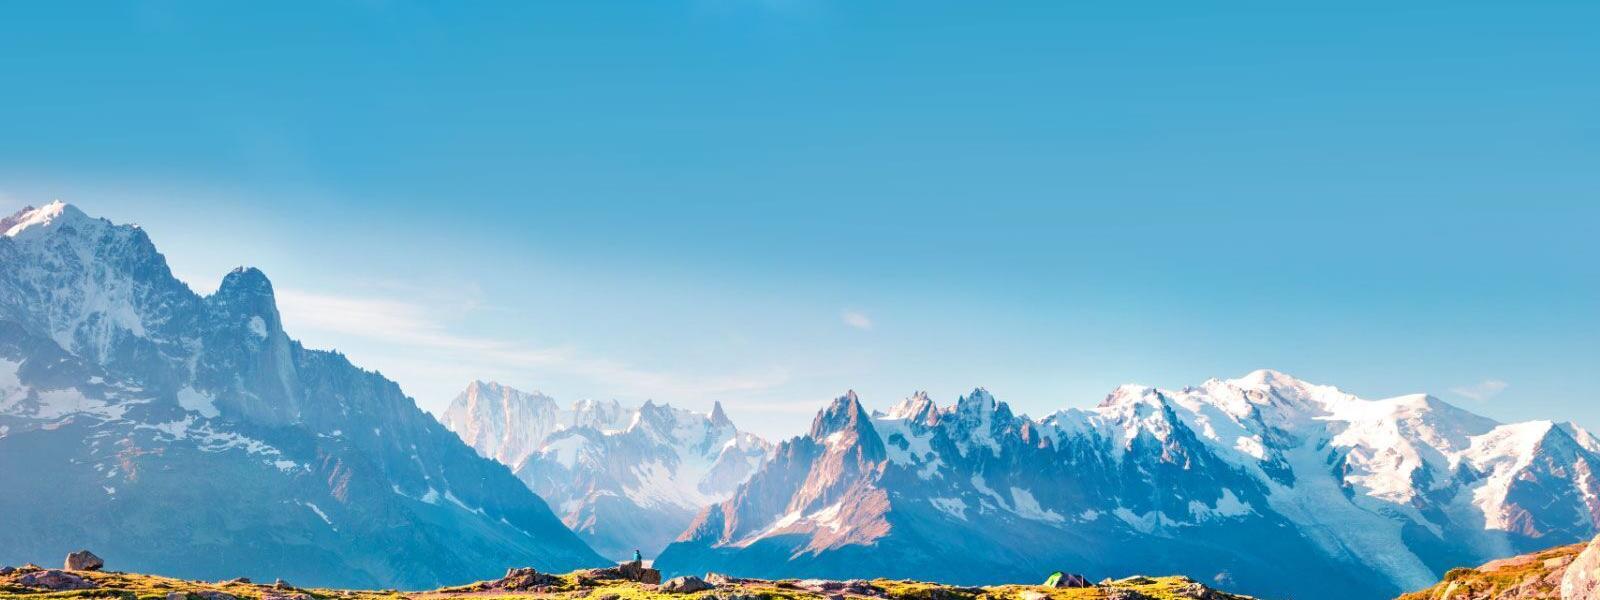 Ferienwohnungen und Ferienhäuser in den französischen Alpen - atraveo